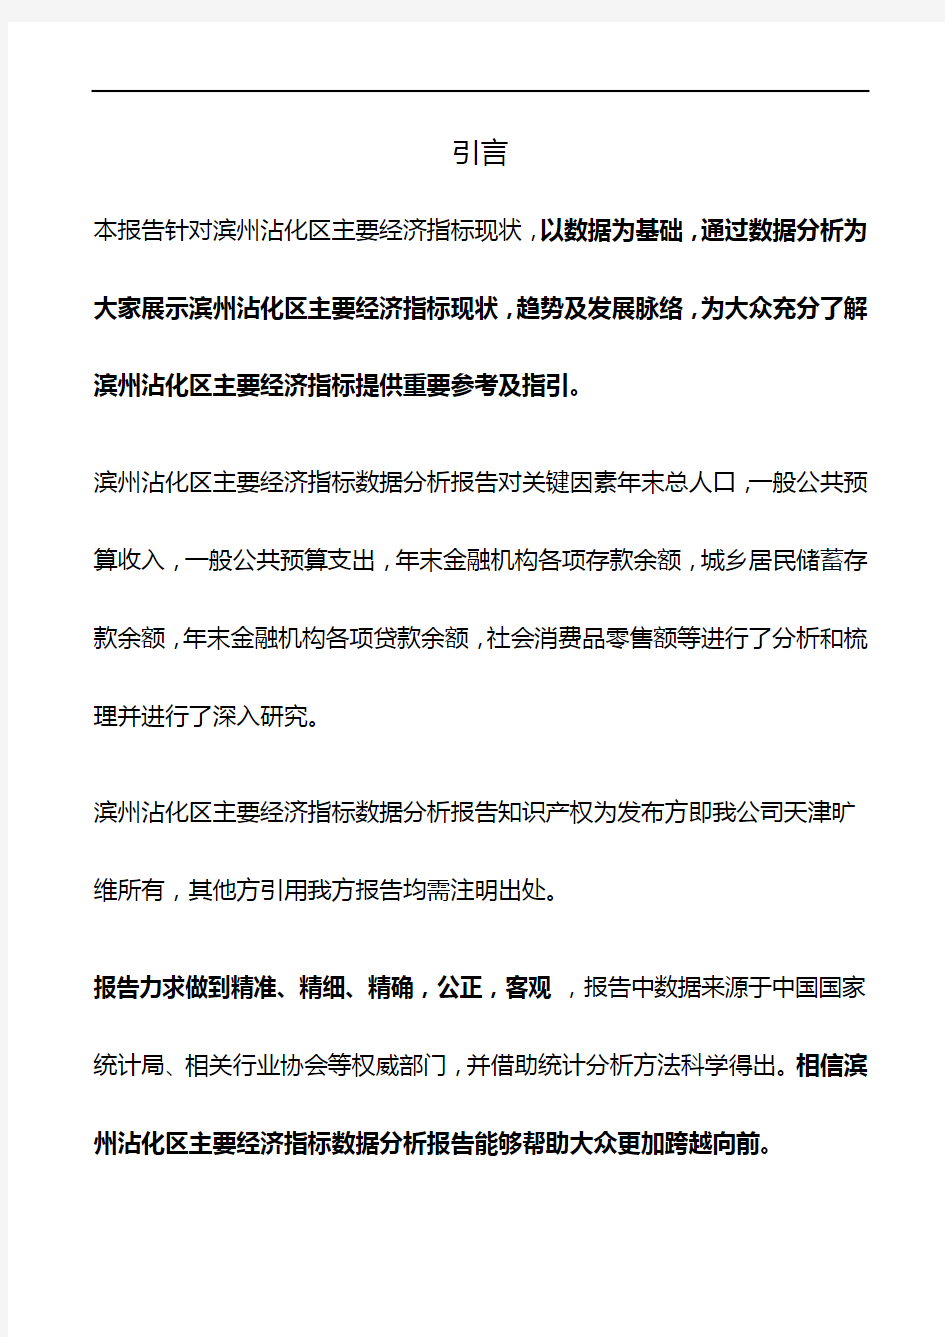 山东省滨州沾化区主要经济指标3年数据分析报告2019版